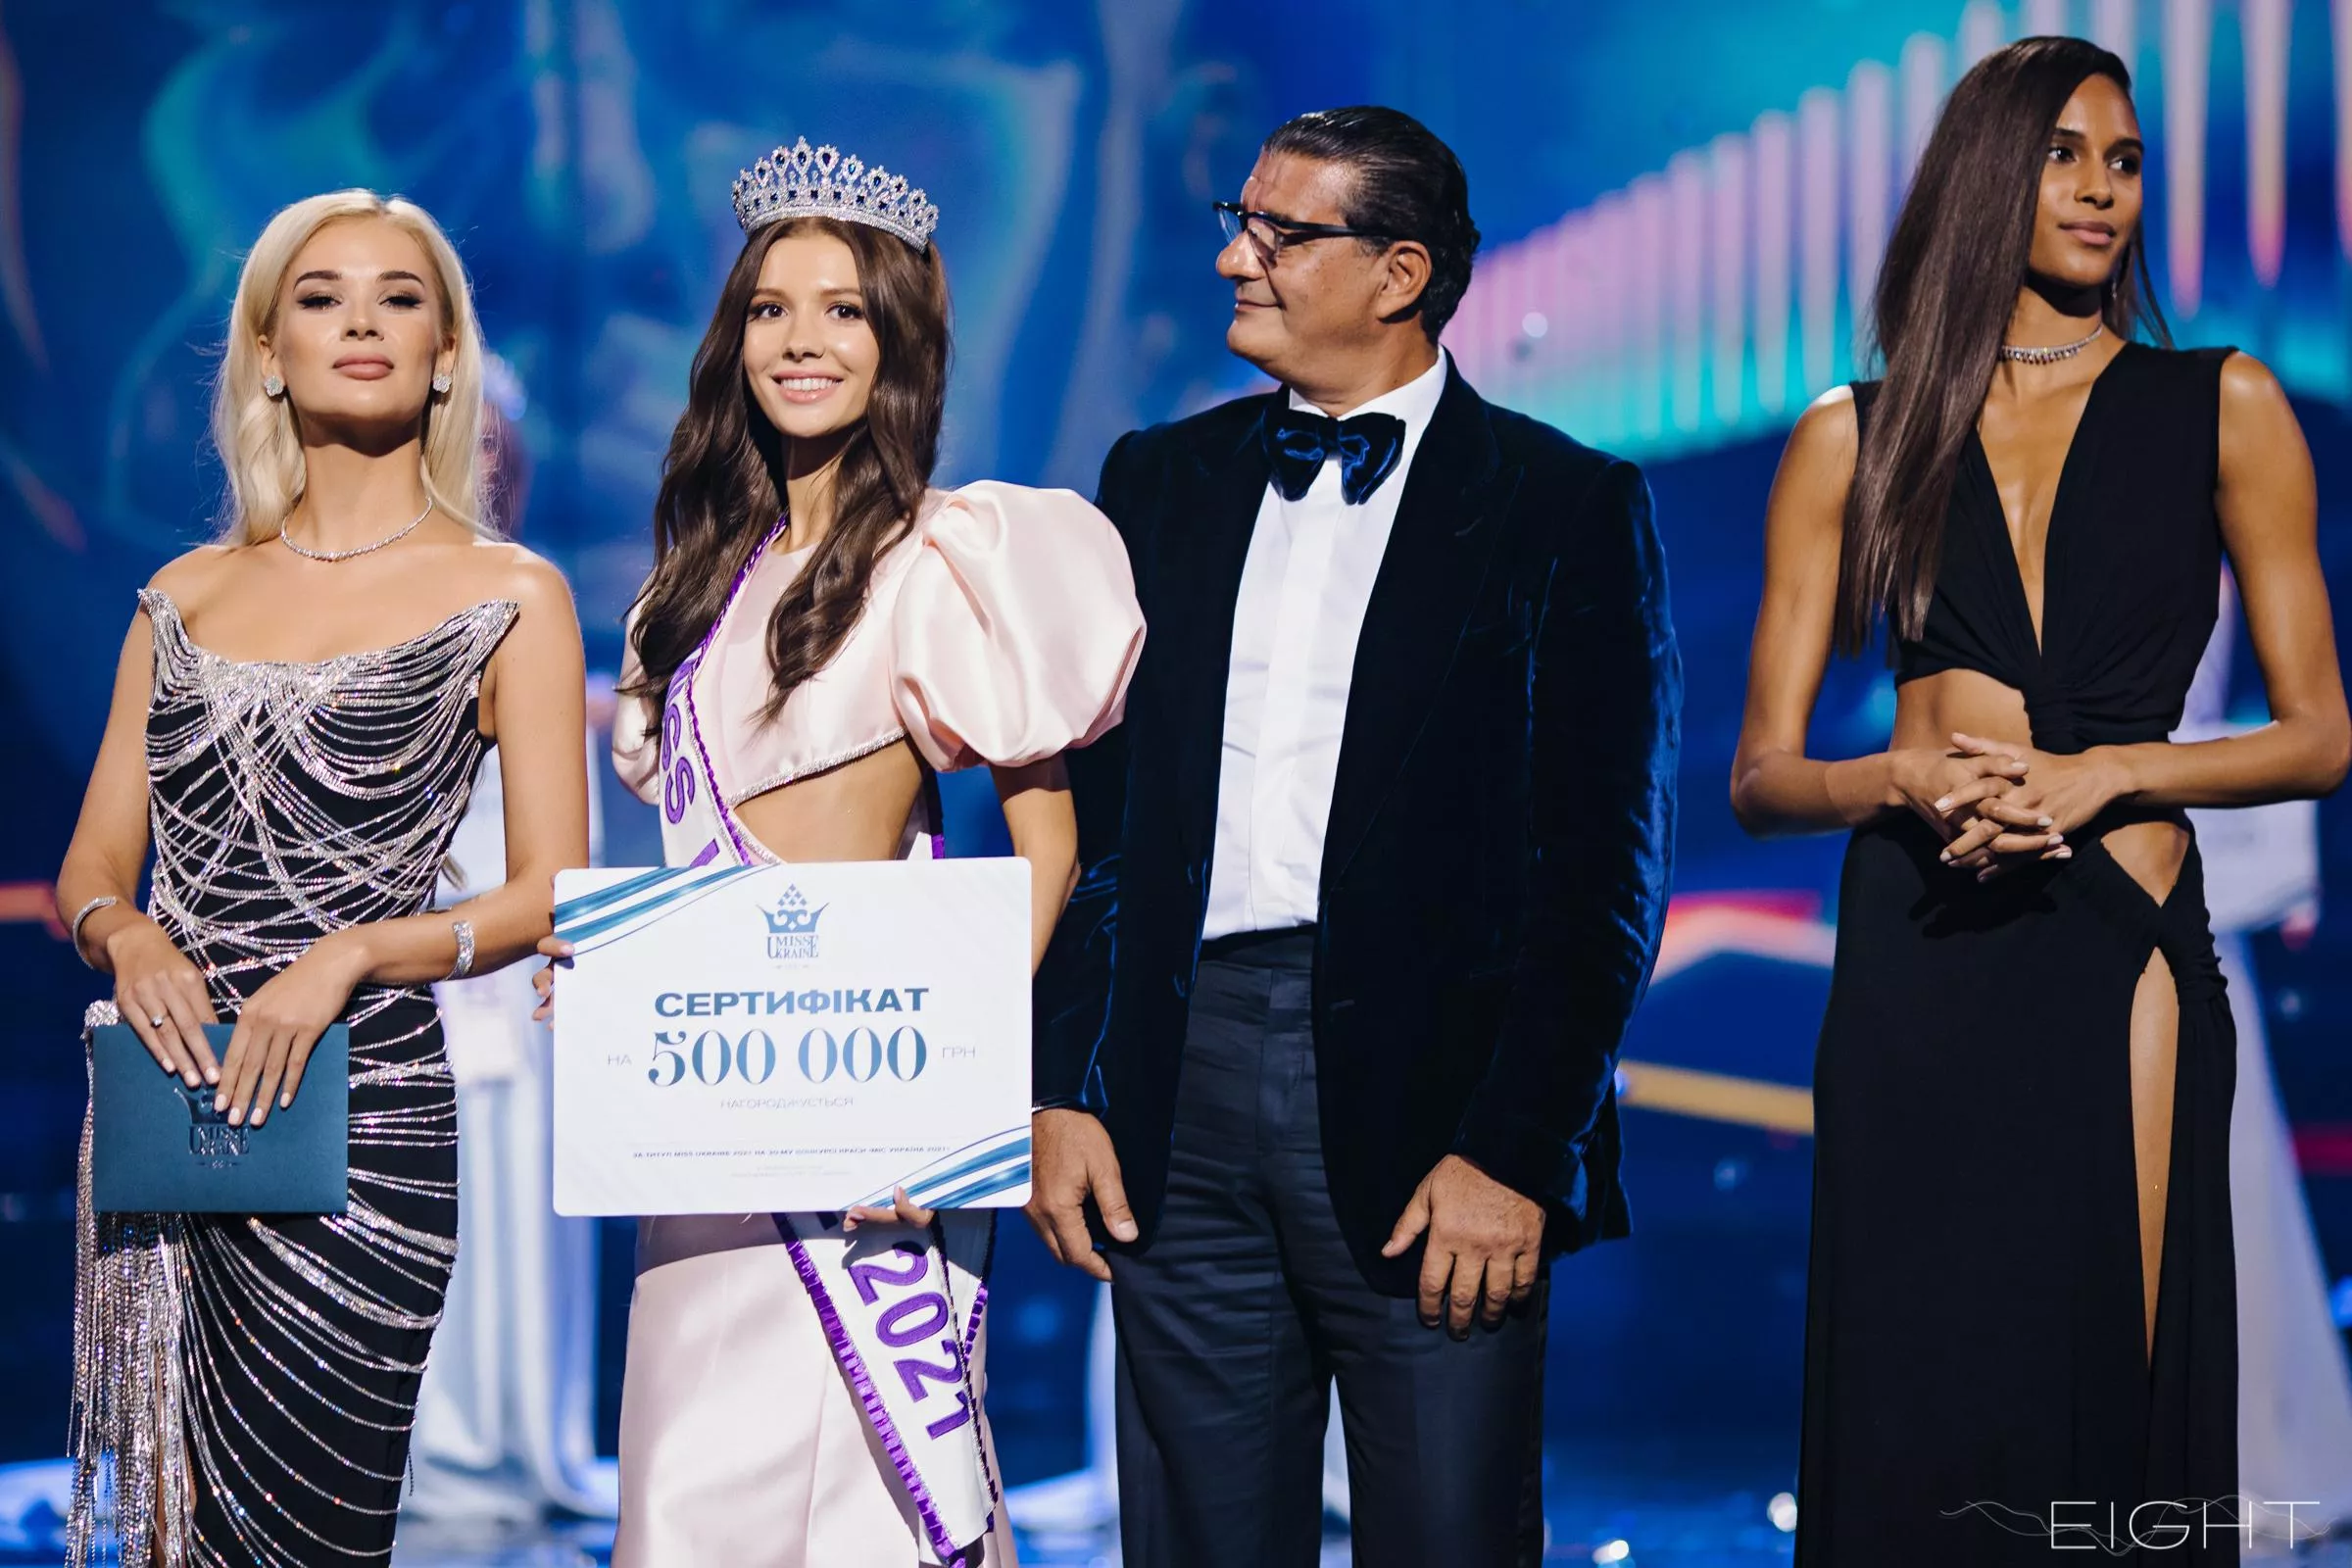 Обладательницей титула "Мисс Украина 2021" стала Александра Яремчук